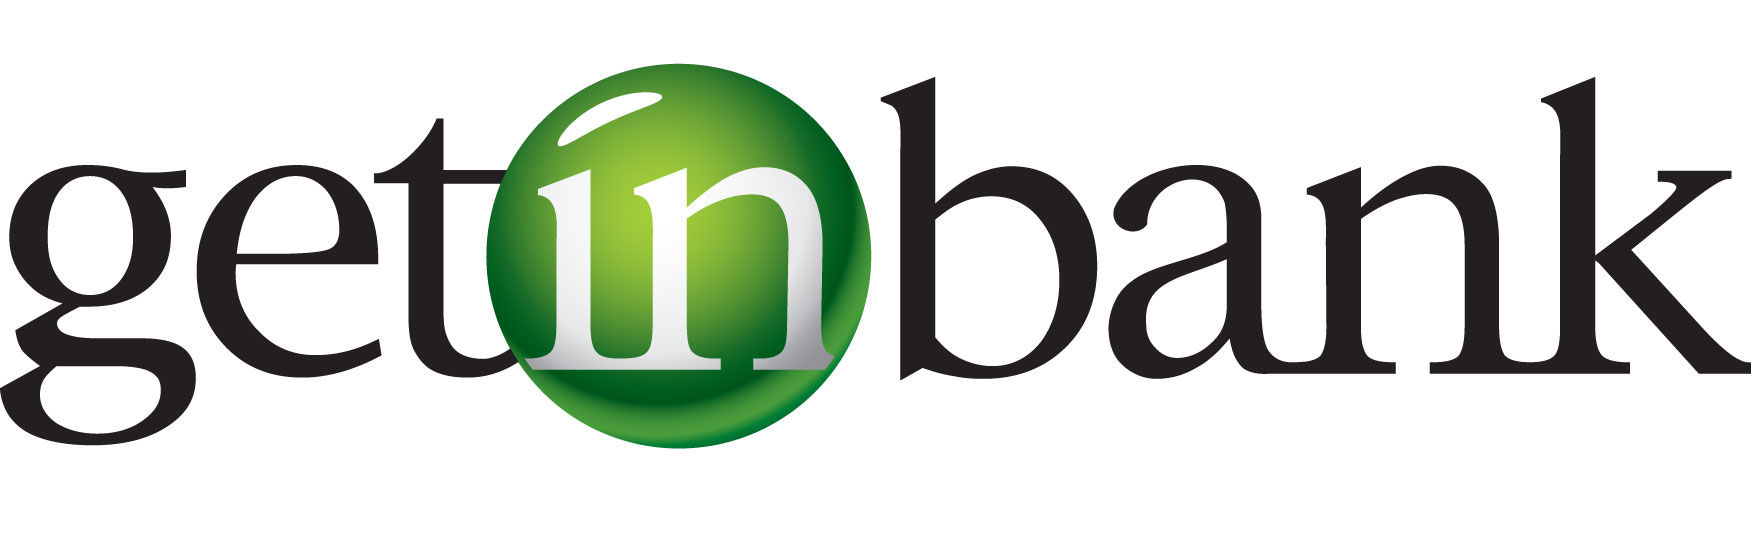 getin-bank-logo